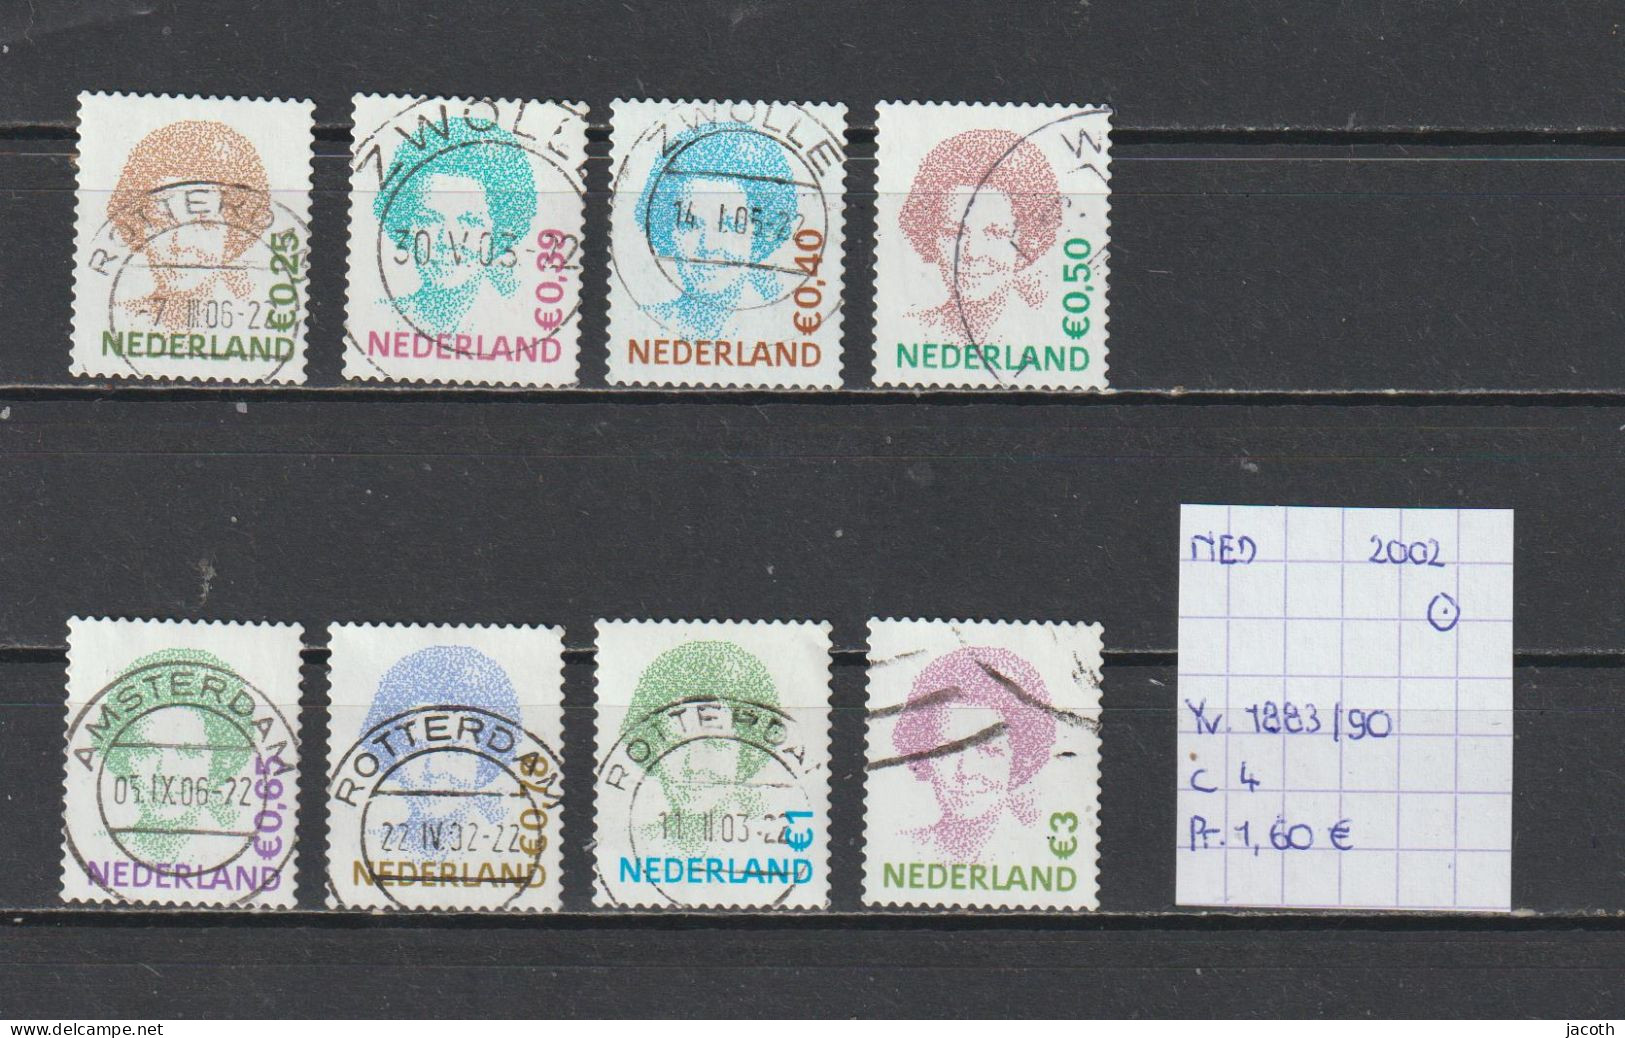 Nederland 2002 - YT 1883/90 (gest./obl./used) - Usati